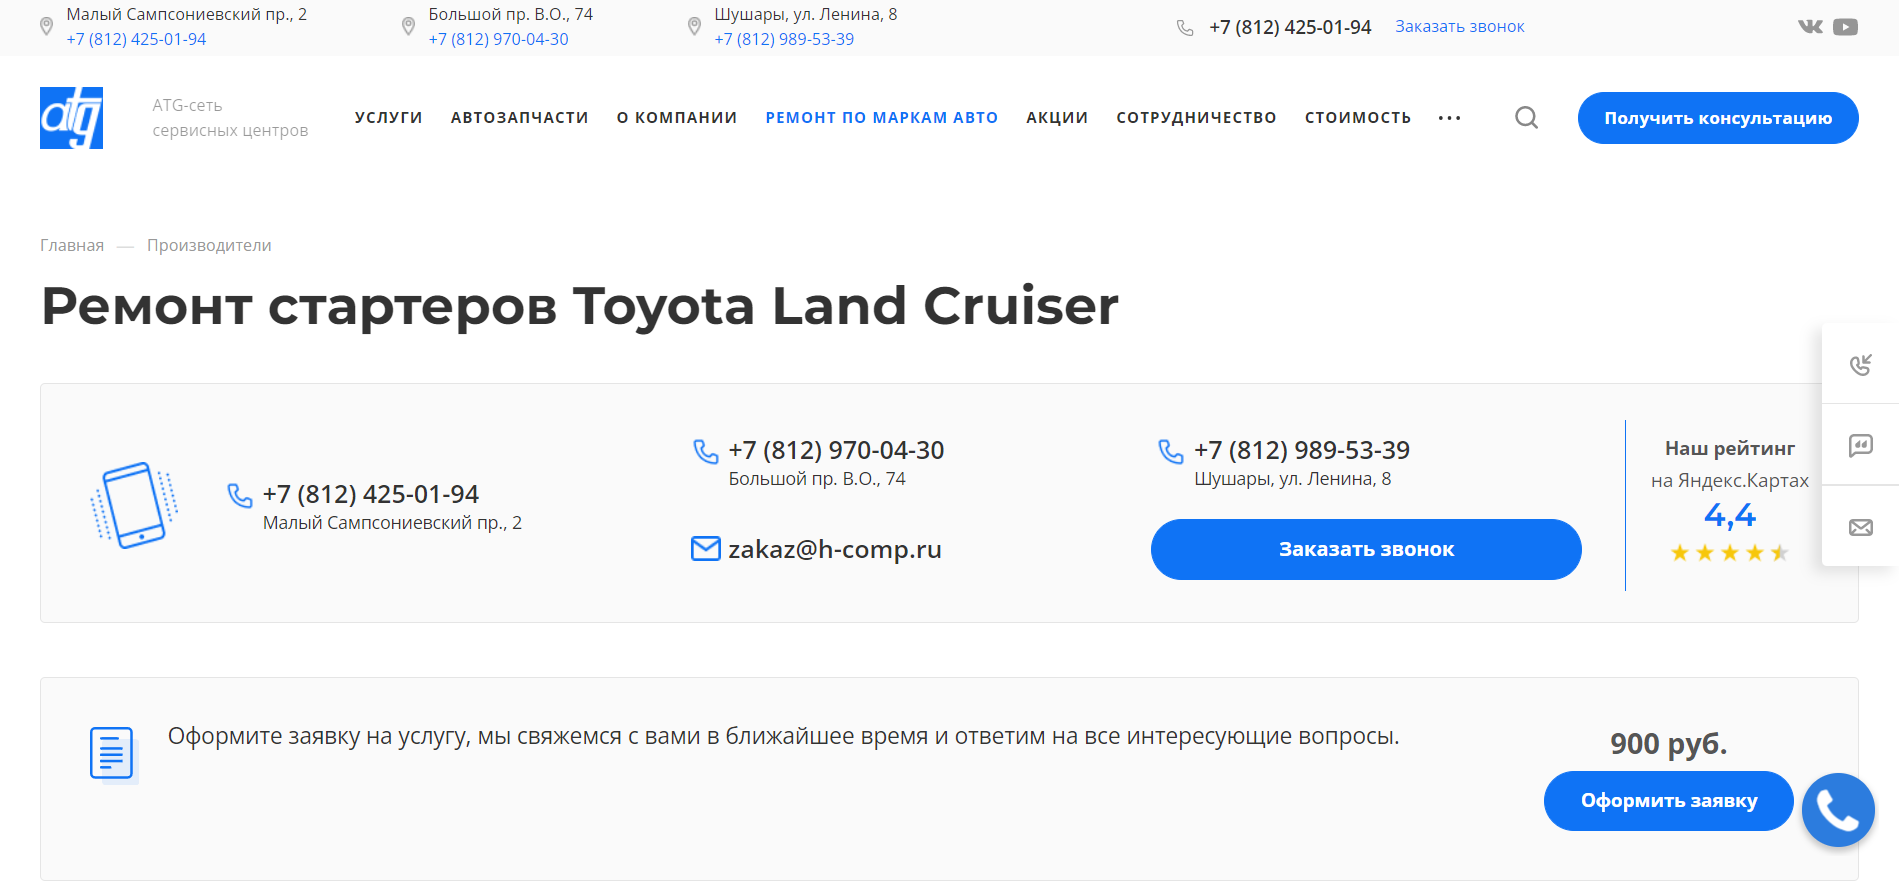 Ремонт стартеров Toyota Land Cruiser